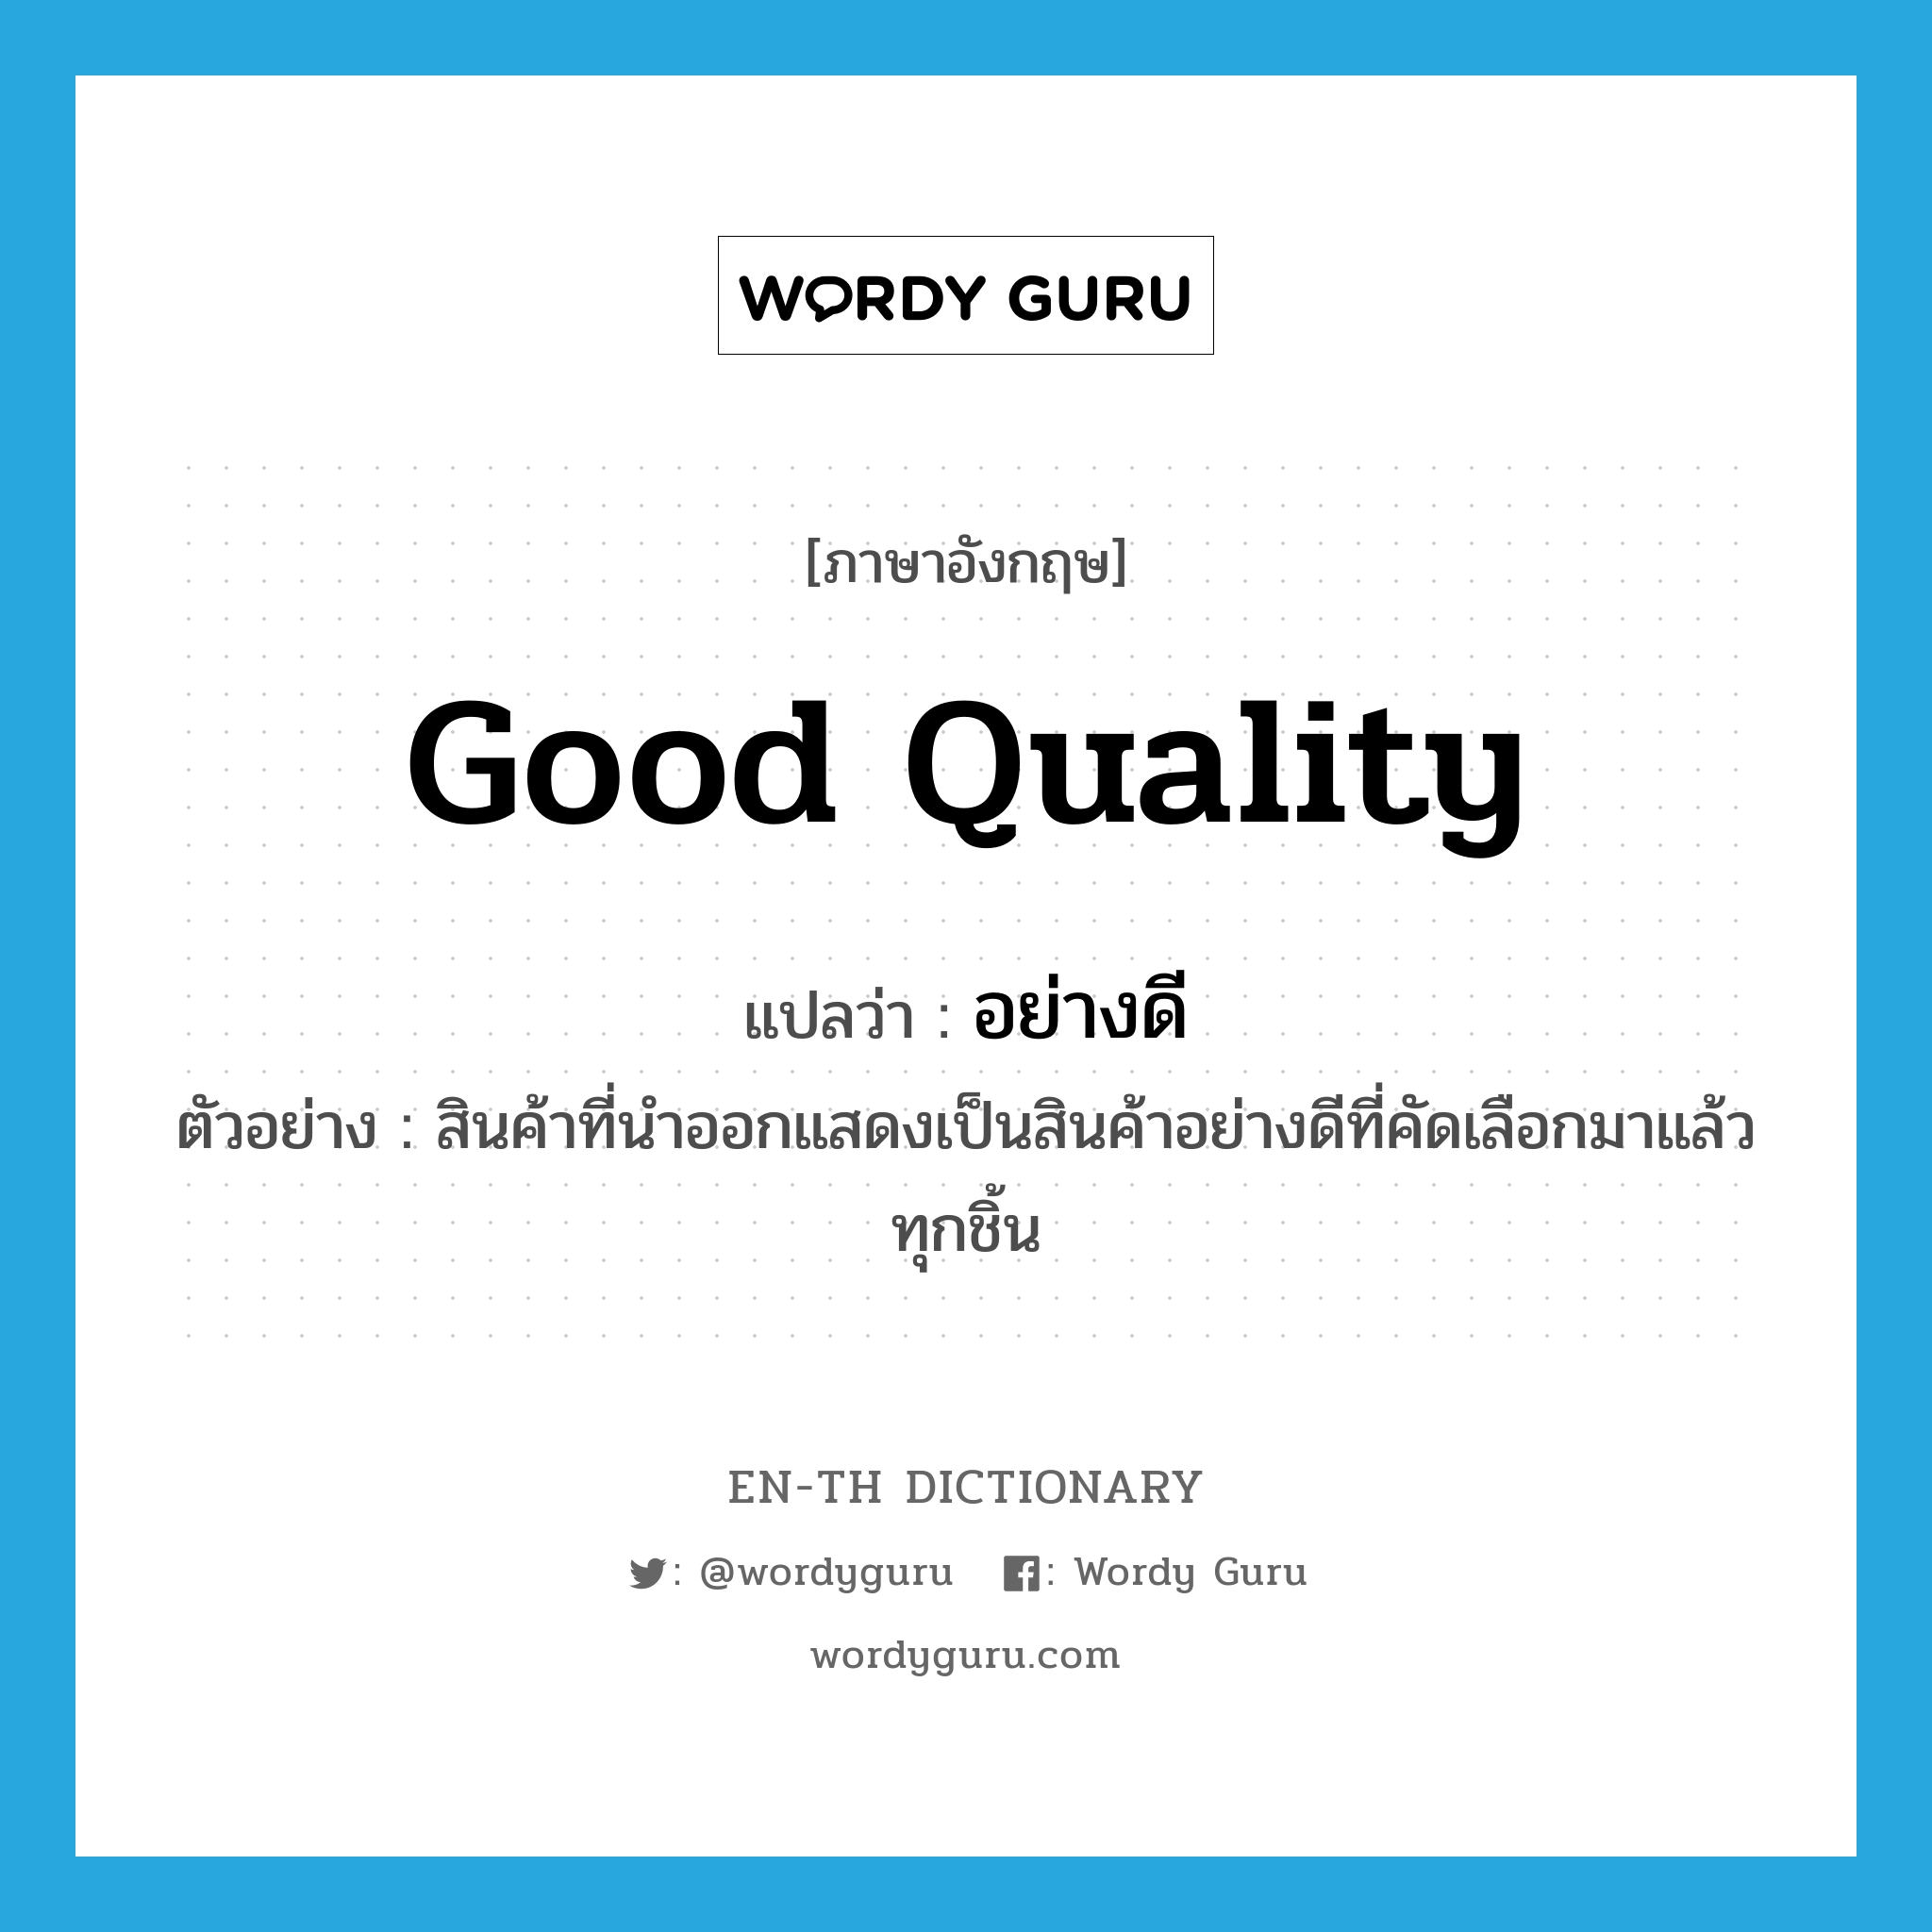 good quality แปลว่า?, คำศัพท์ภาษาอังกฤษ good quality แปลว่า อย่างดี ประเภท ADJ ตัวอย่าง สินค้าที่นำออกแสดงเป็นสินค้าอย่างดีที่คัดเลือกมาแล้วทุกชิ้น หมวด ADJ